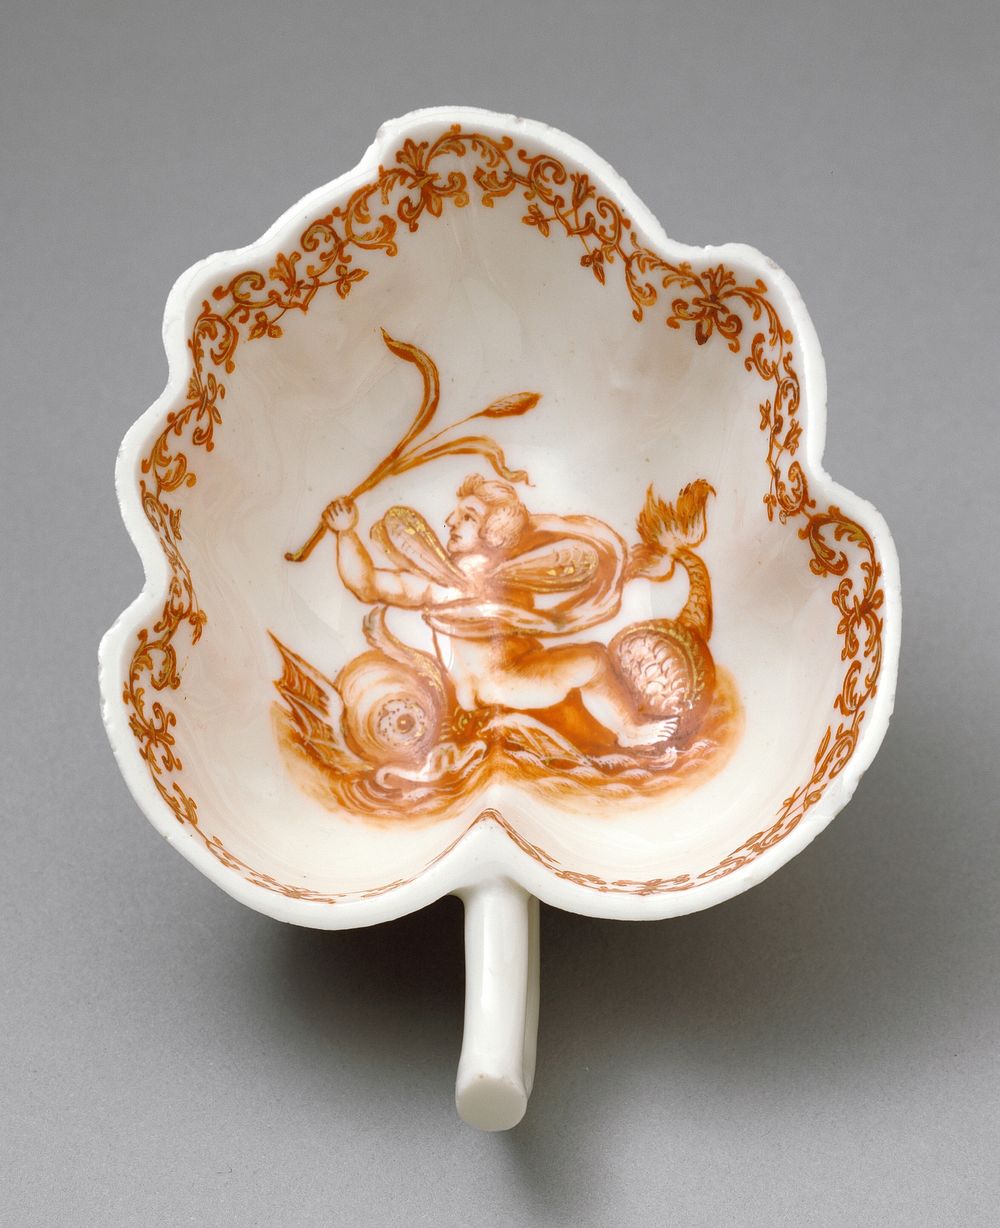 Leaf-Shaped Dish by Ignaz Preissler and Meissen Porcelain Manufactory